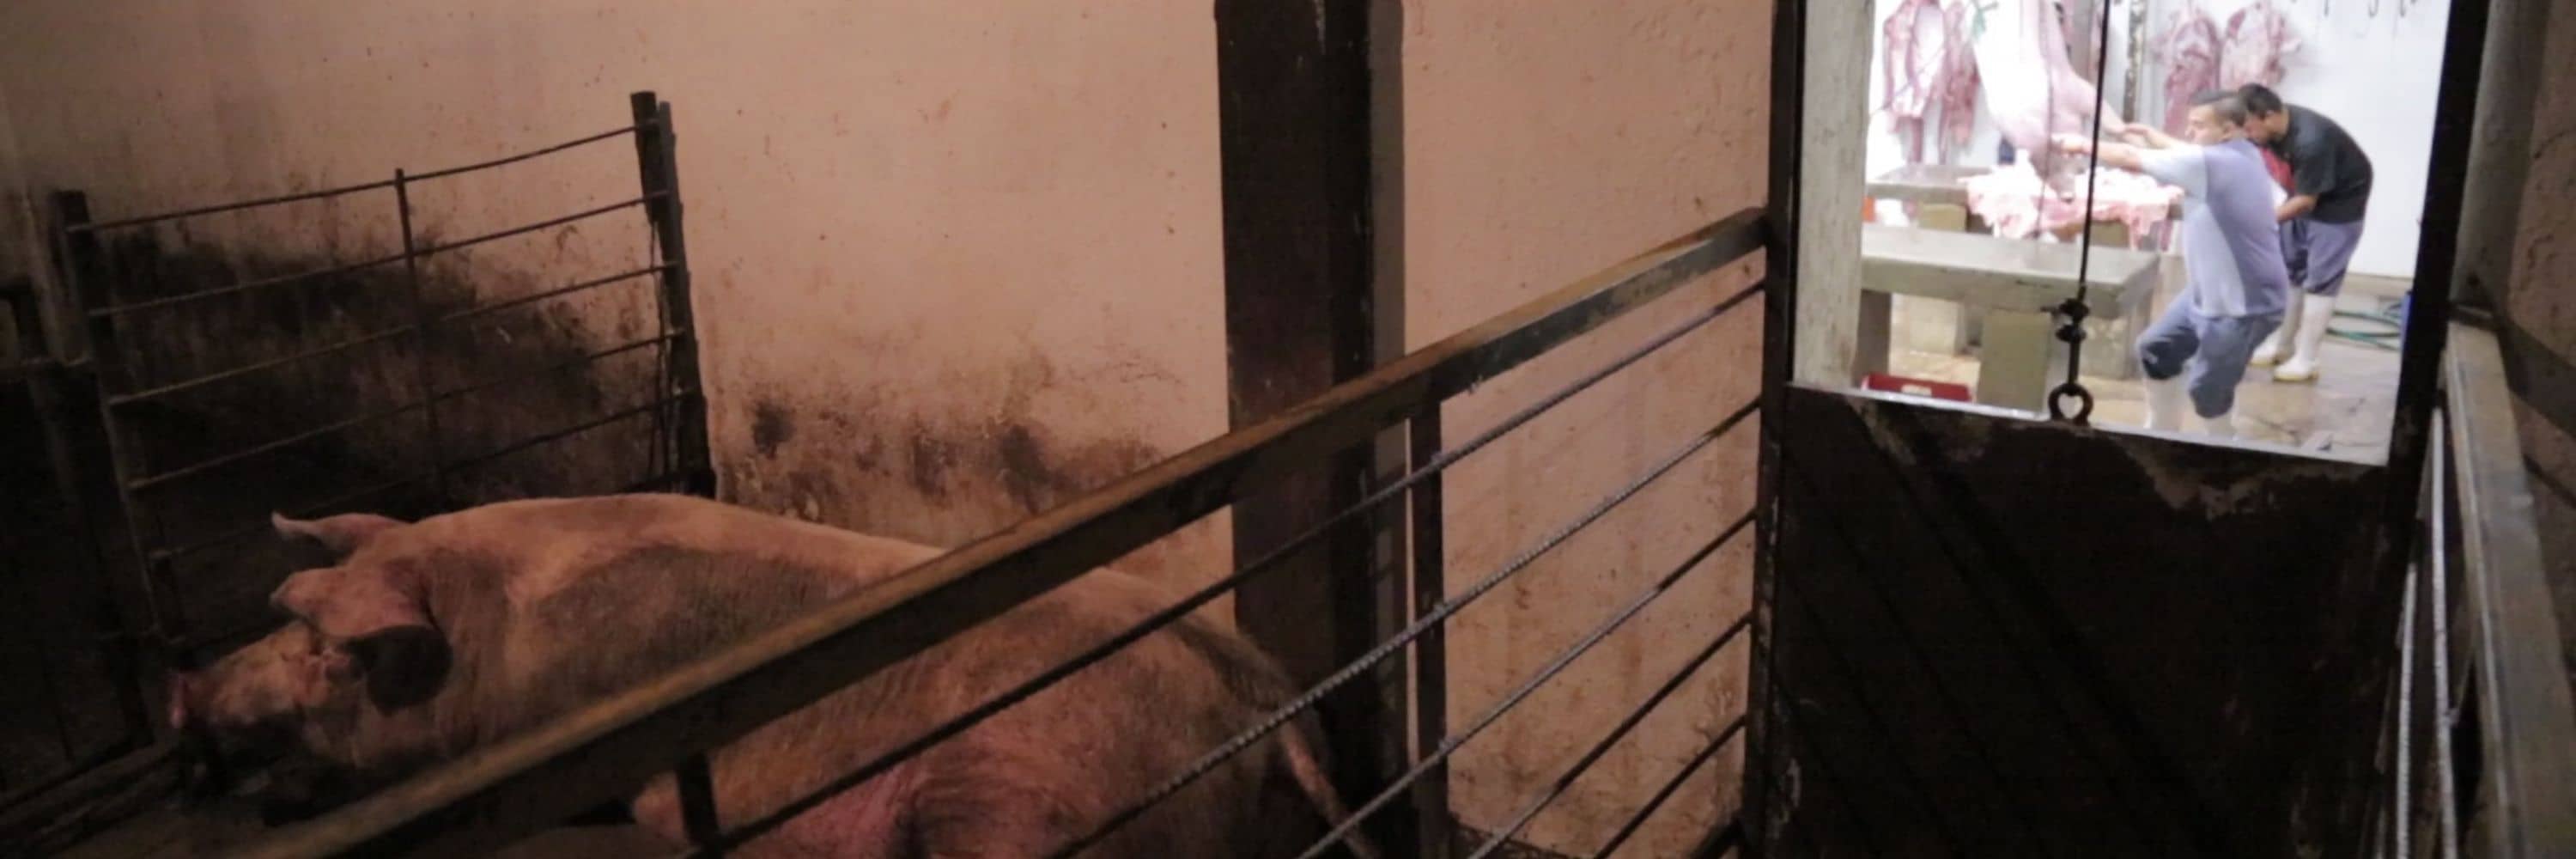 Un cerdo es mantenido dentro de un corral antes de ser matado, mientras los operarios sacrifican a otro cerdo en la sala contigua.